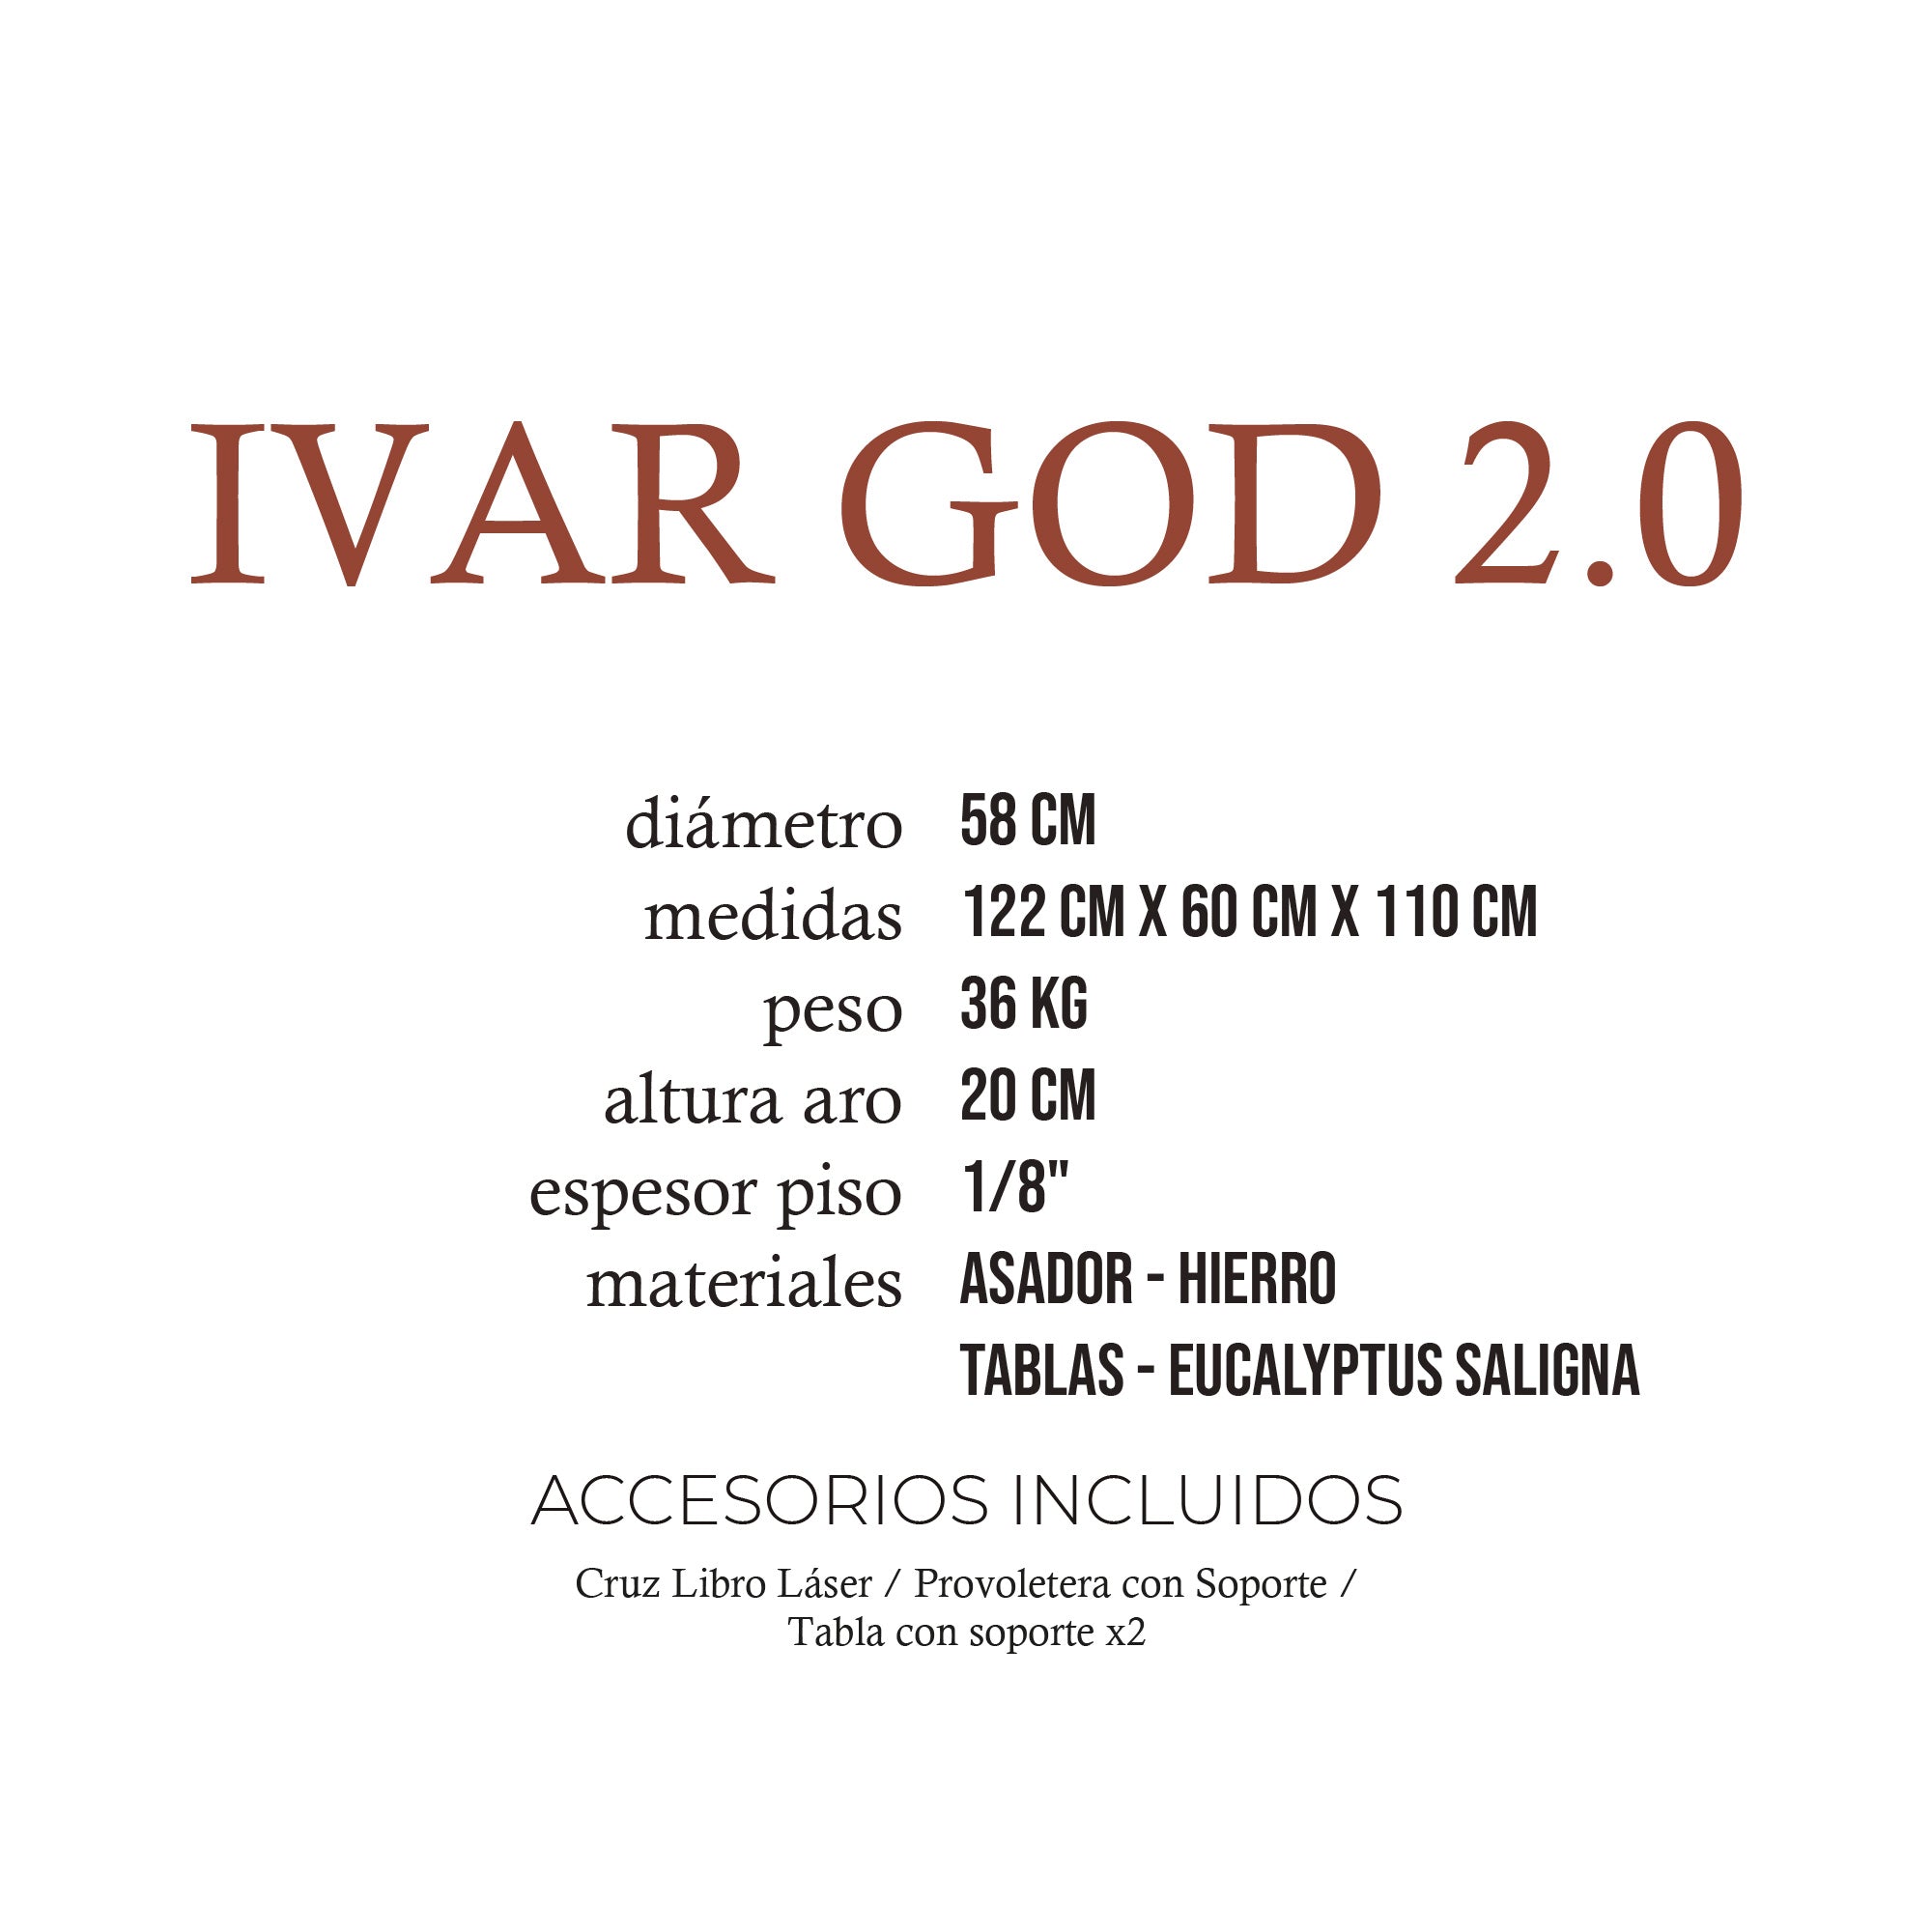 Ivar God 2.0